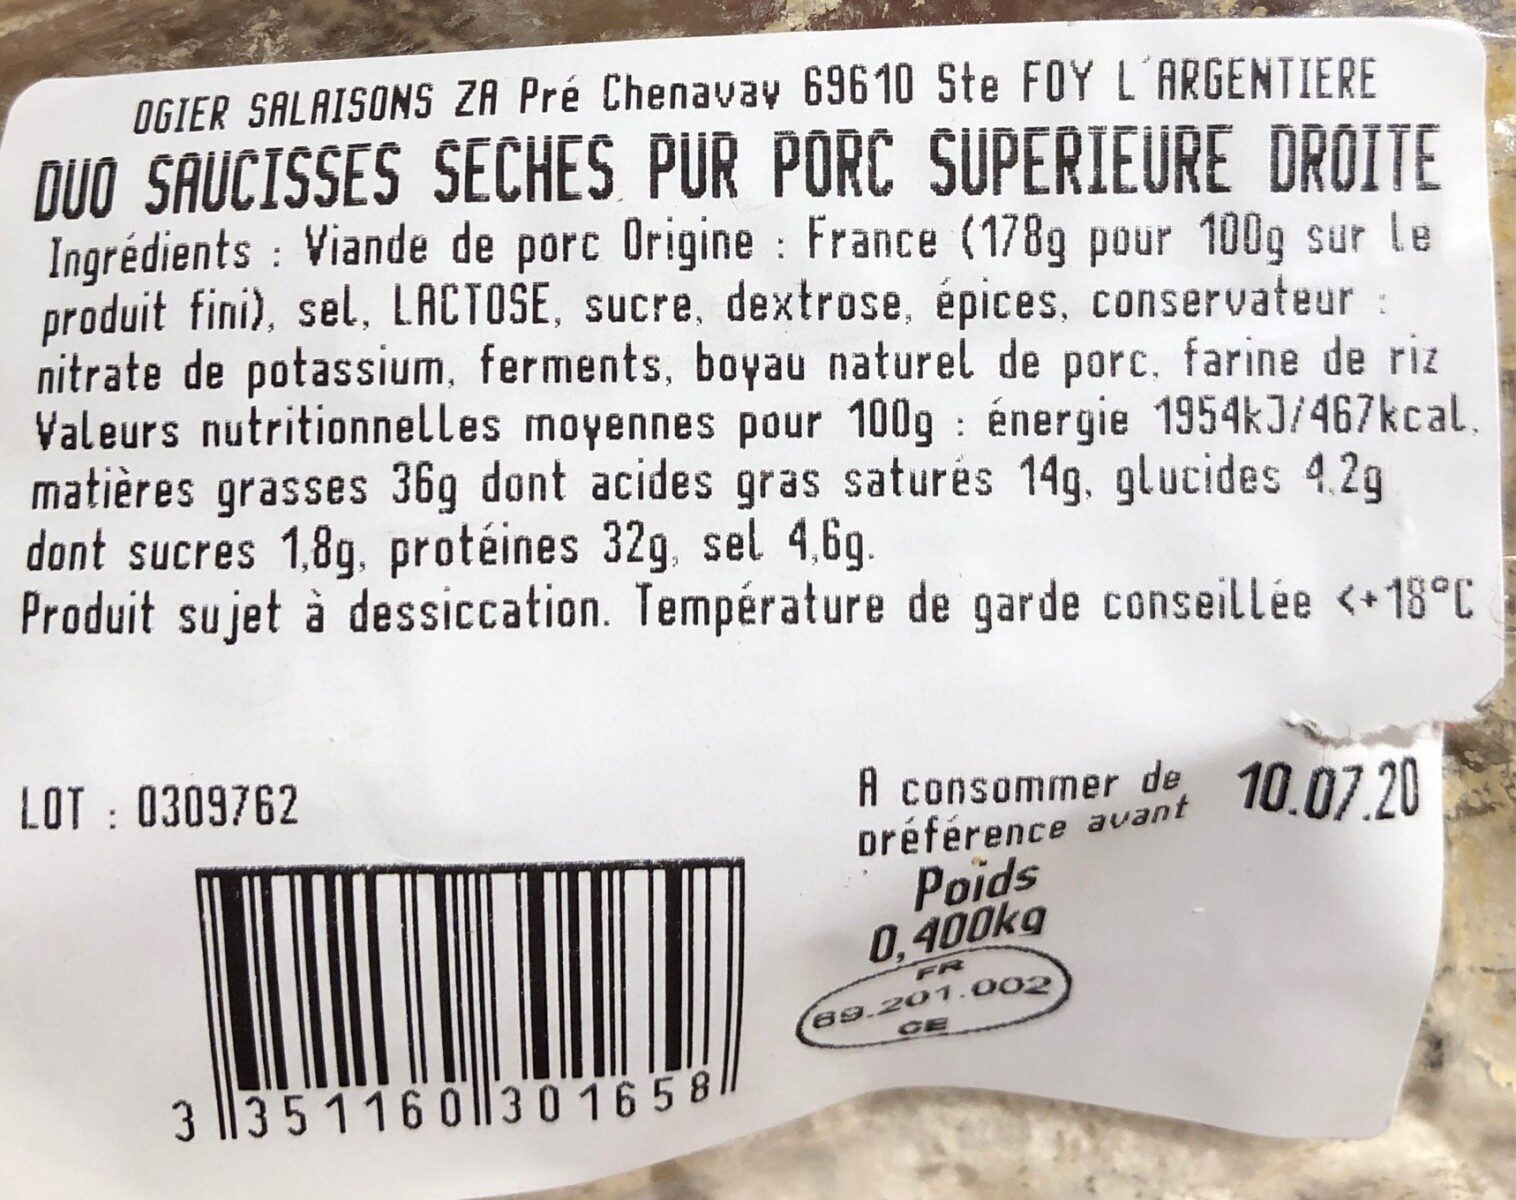 Saucisse seche - Nutrition facts - fr